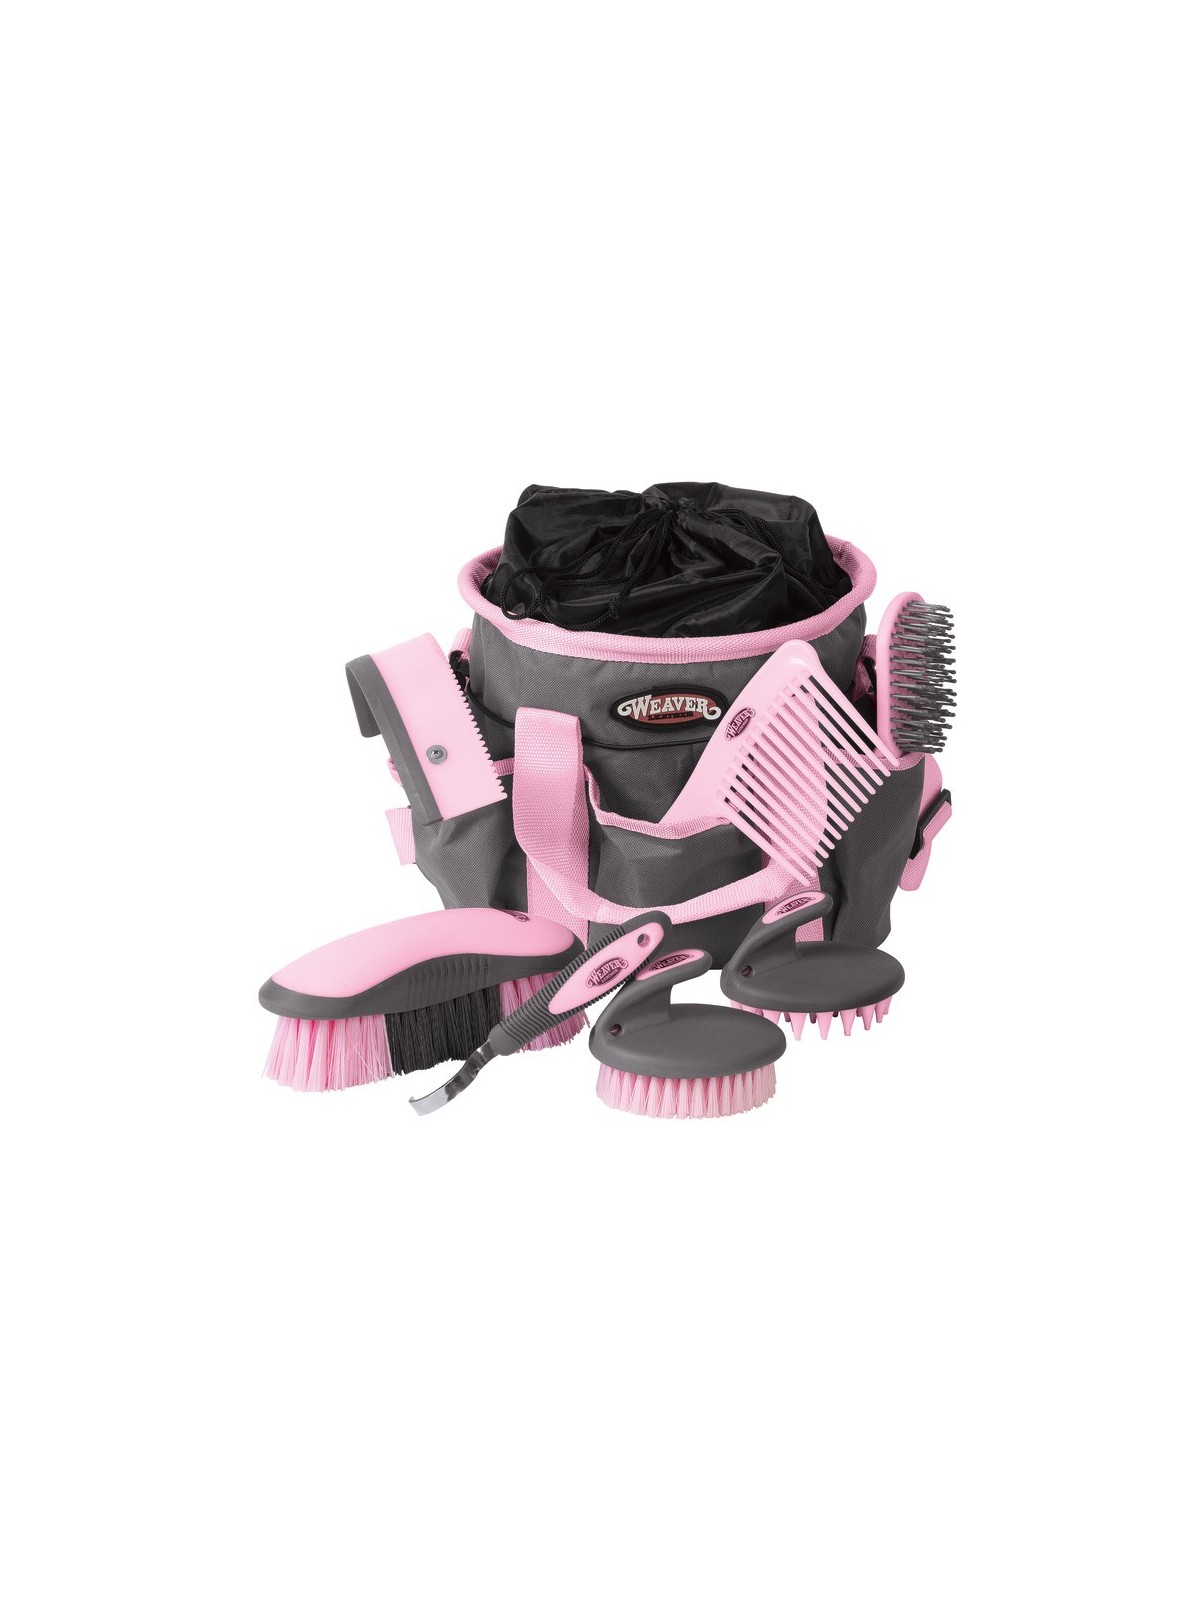 Grooming Kit grey rose pink